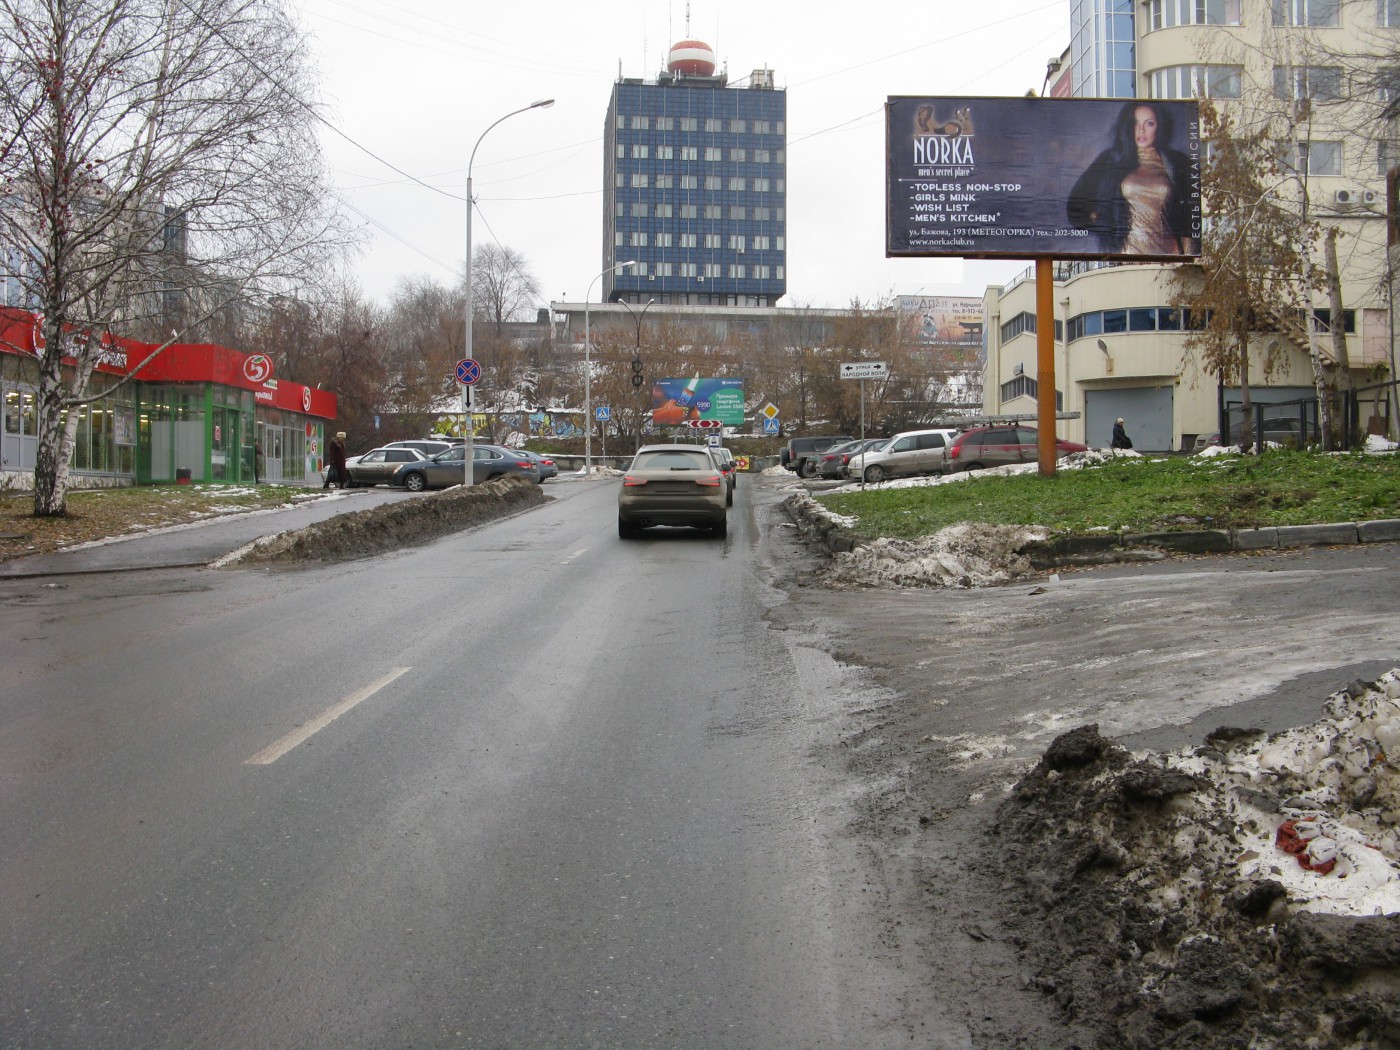 Размещение рекламы клуба «Норка» на билбордах Екатеринбурга